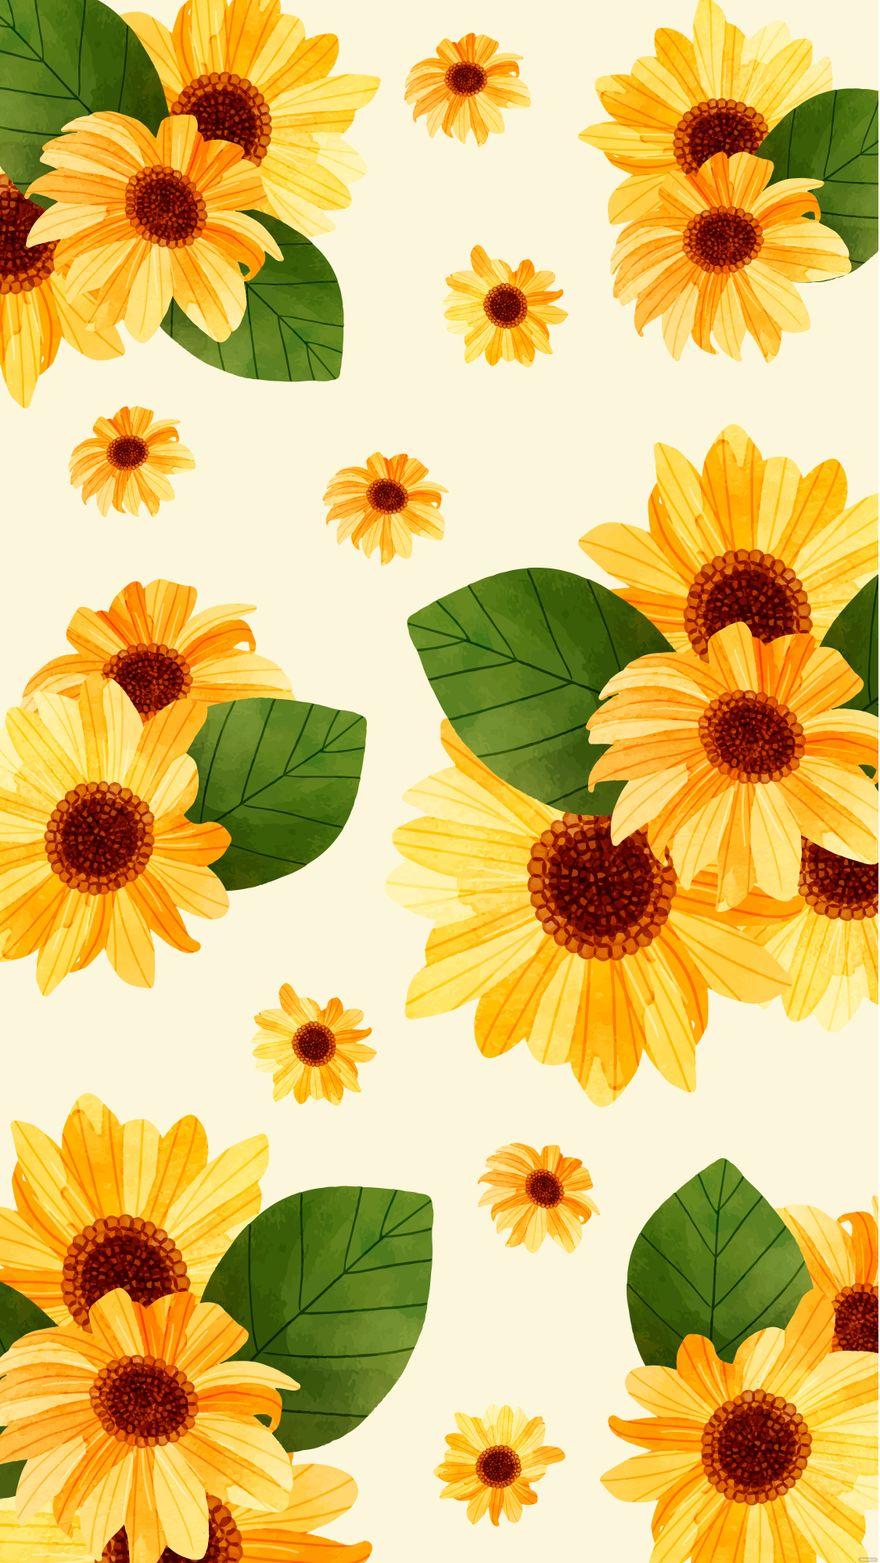 Aesthetic Sunflower iPhone Background Eps Illustrator Jpg